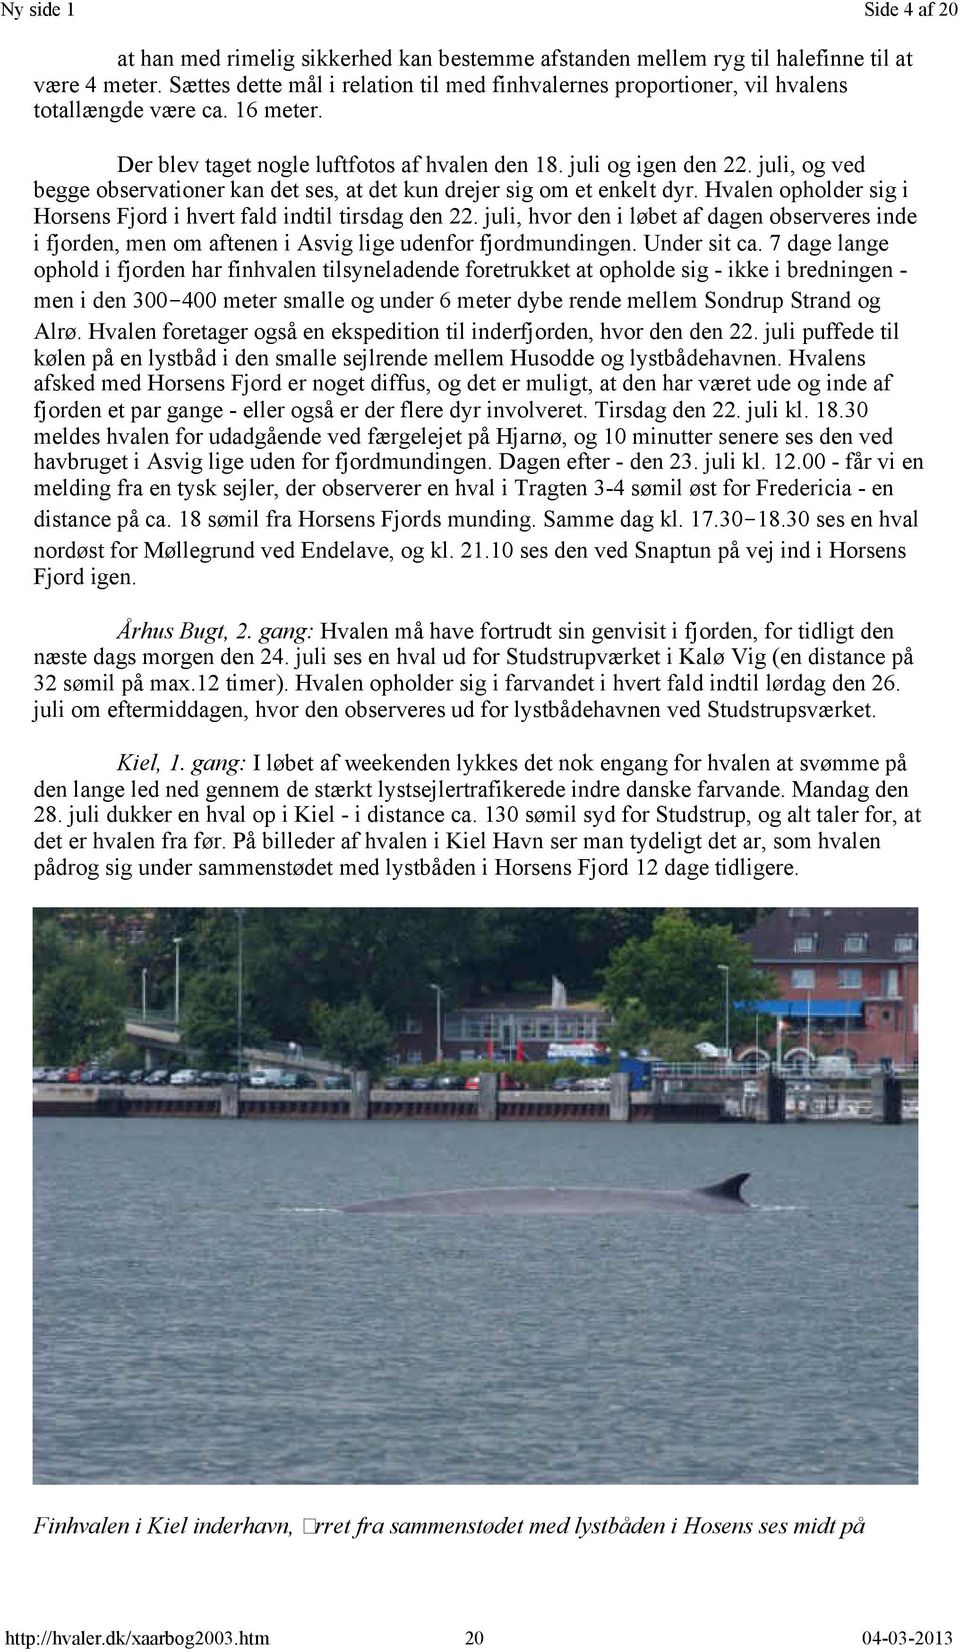 juli, og ved begge observationer kan det ses, at det kun drejer sig om et enkelt dyr. Hvalen opholder sig i Horsens Fjord i hvert fald indtil tirsdag den 22.